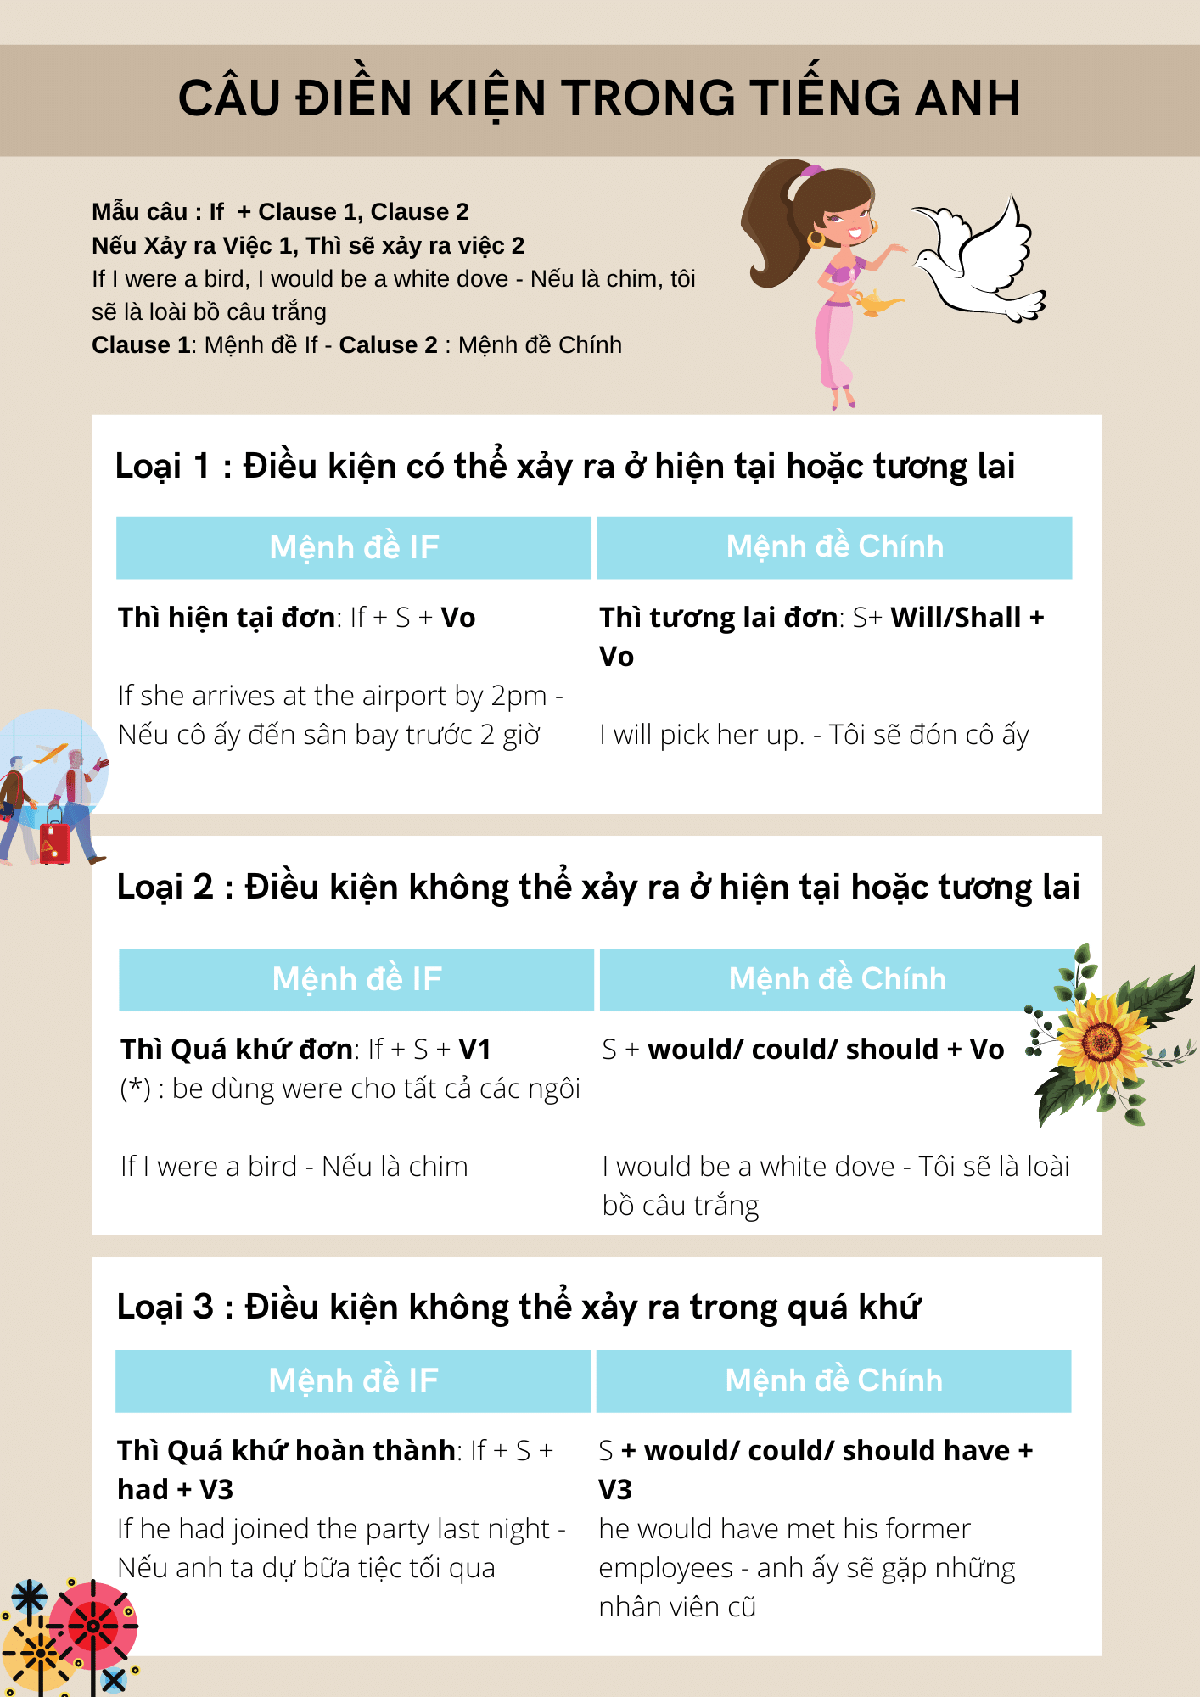 Tóm tắt câu điều kiện trong Tiếng Anh bằng Infographic